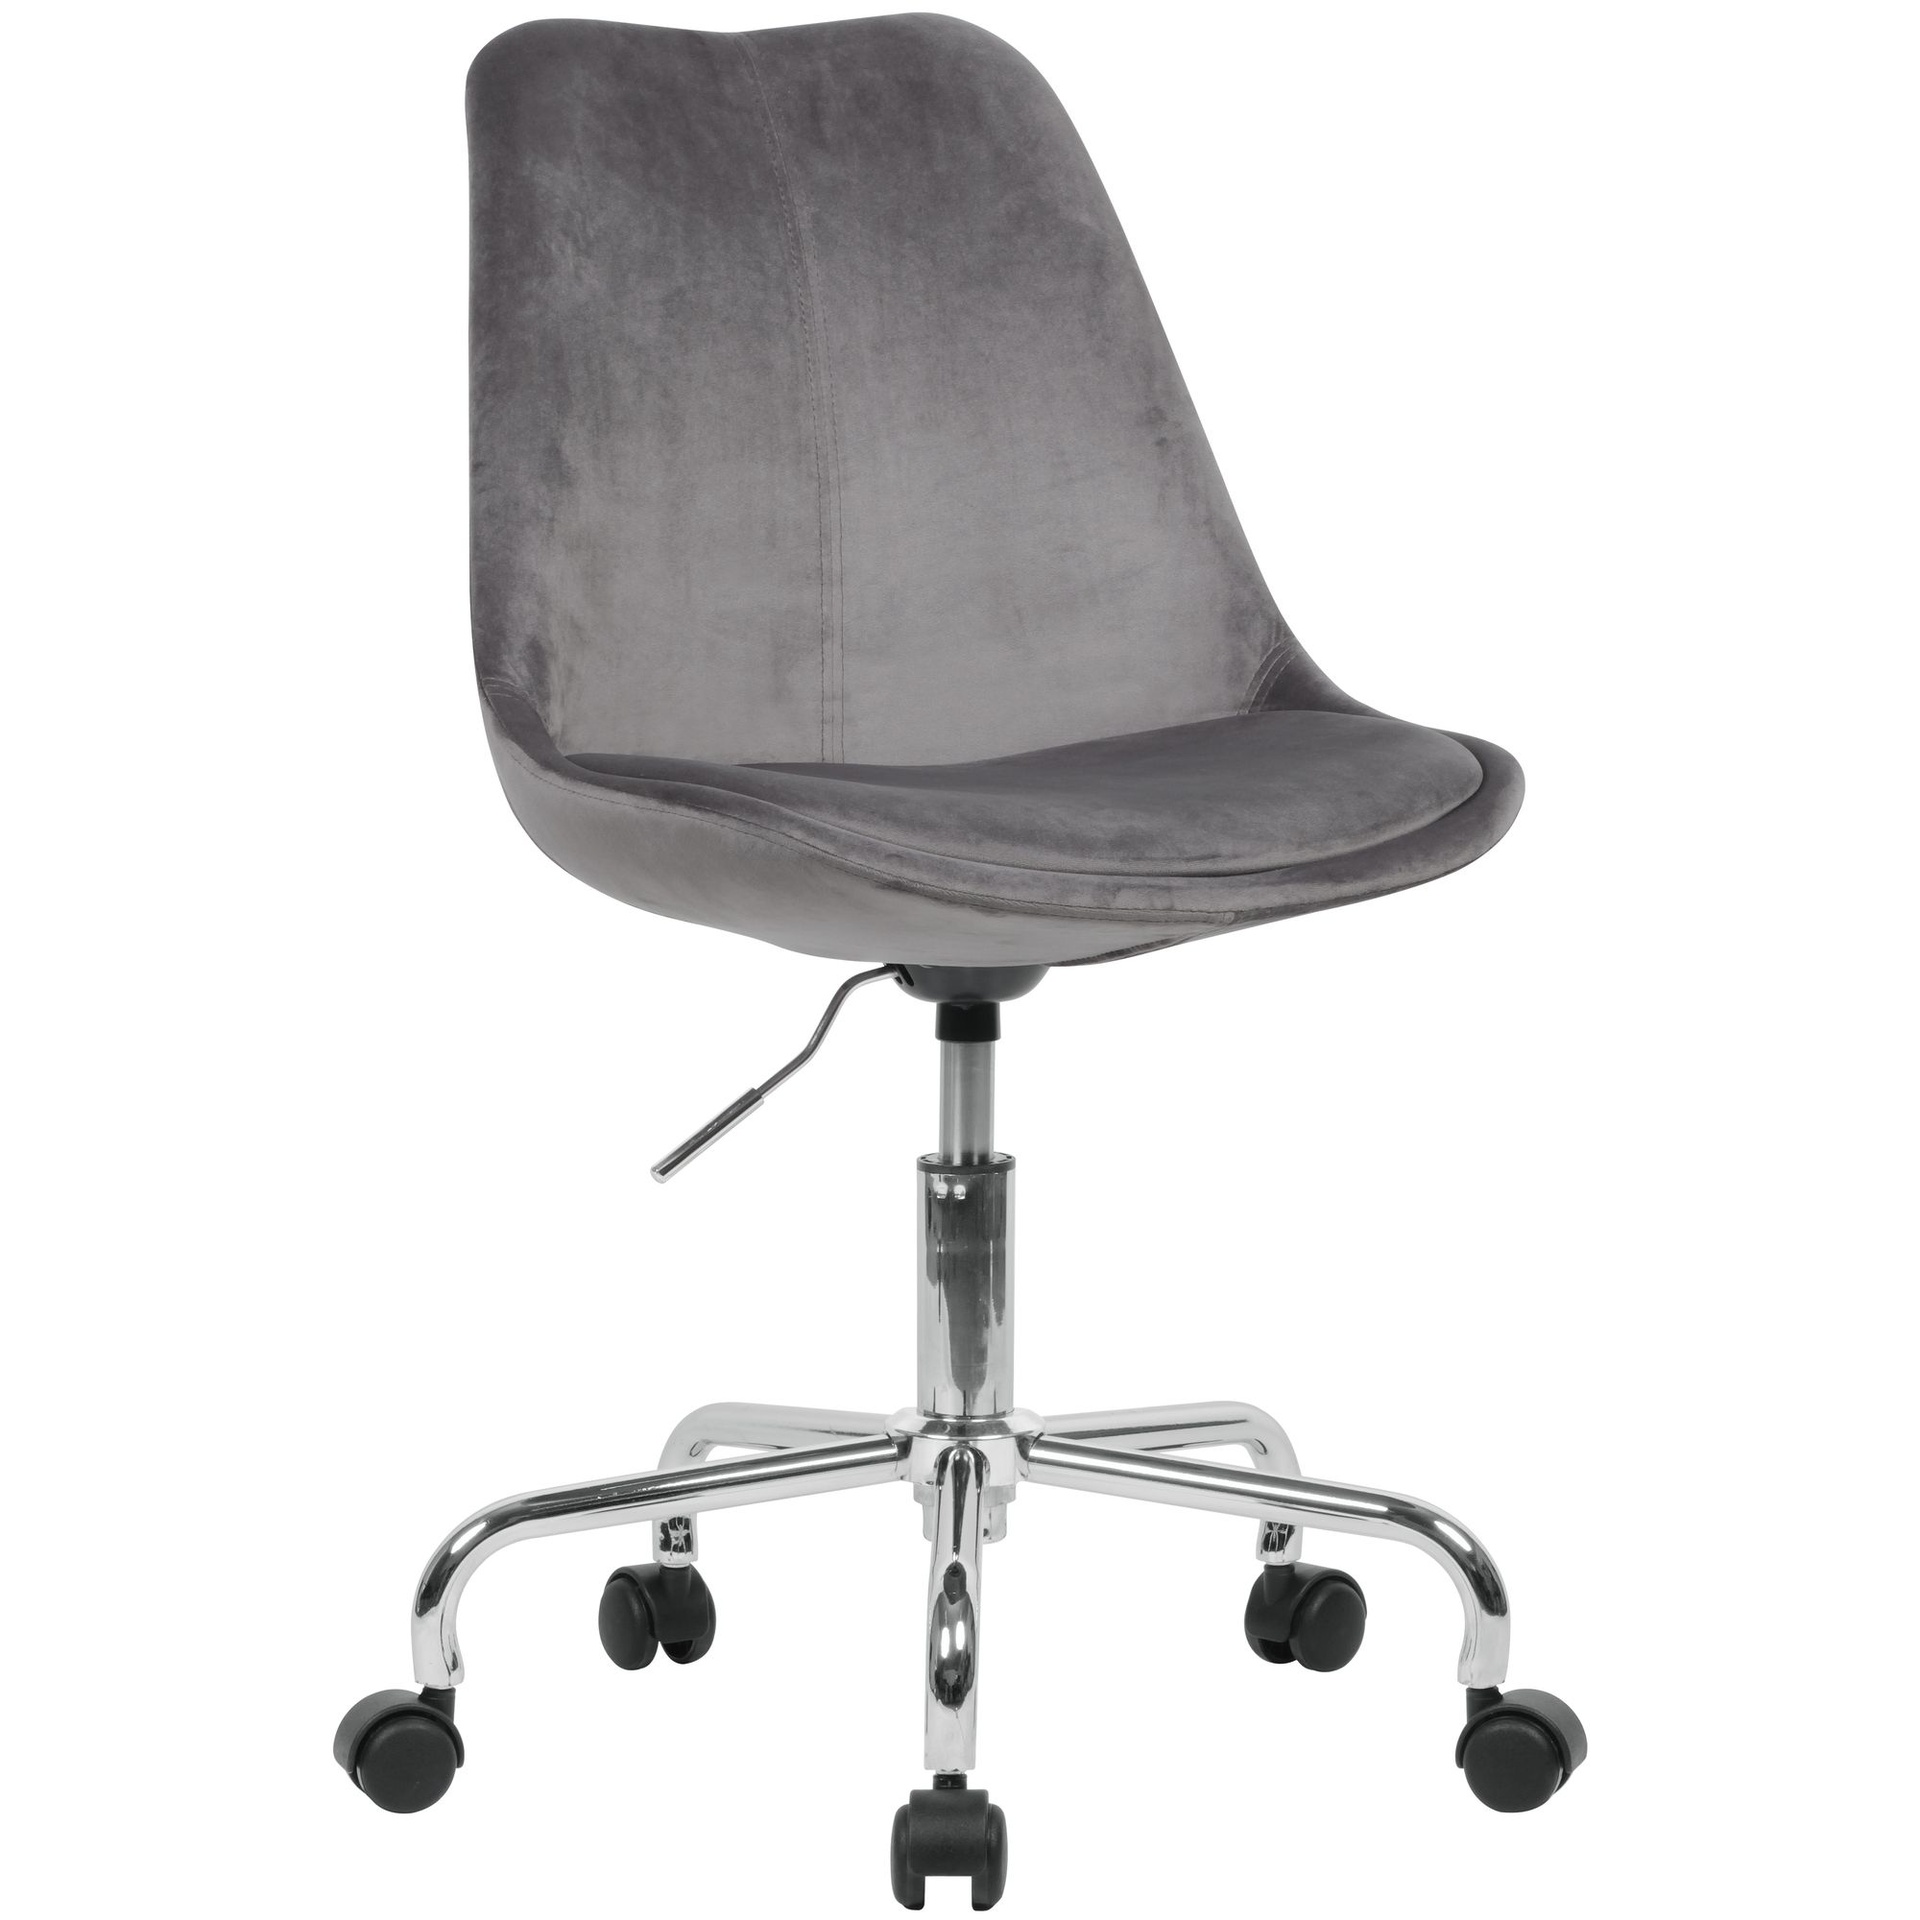 [A09494] Chaise de bureau velours gris foncé